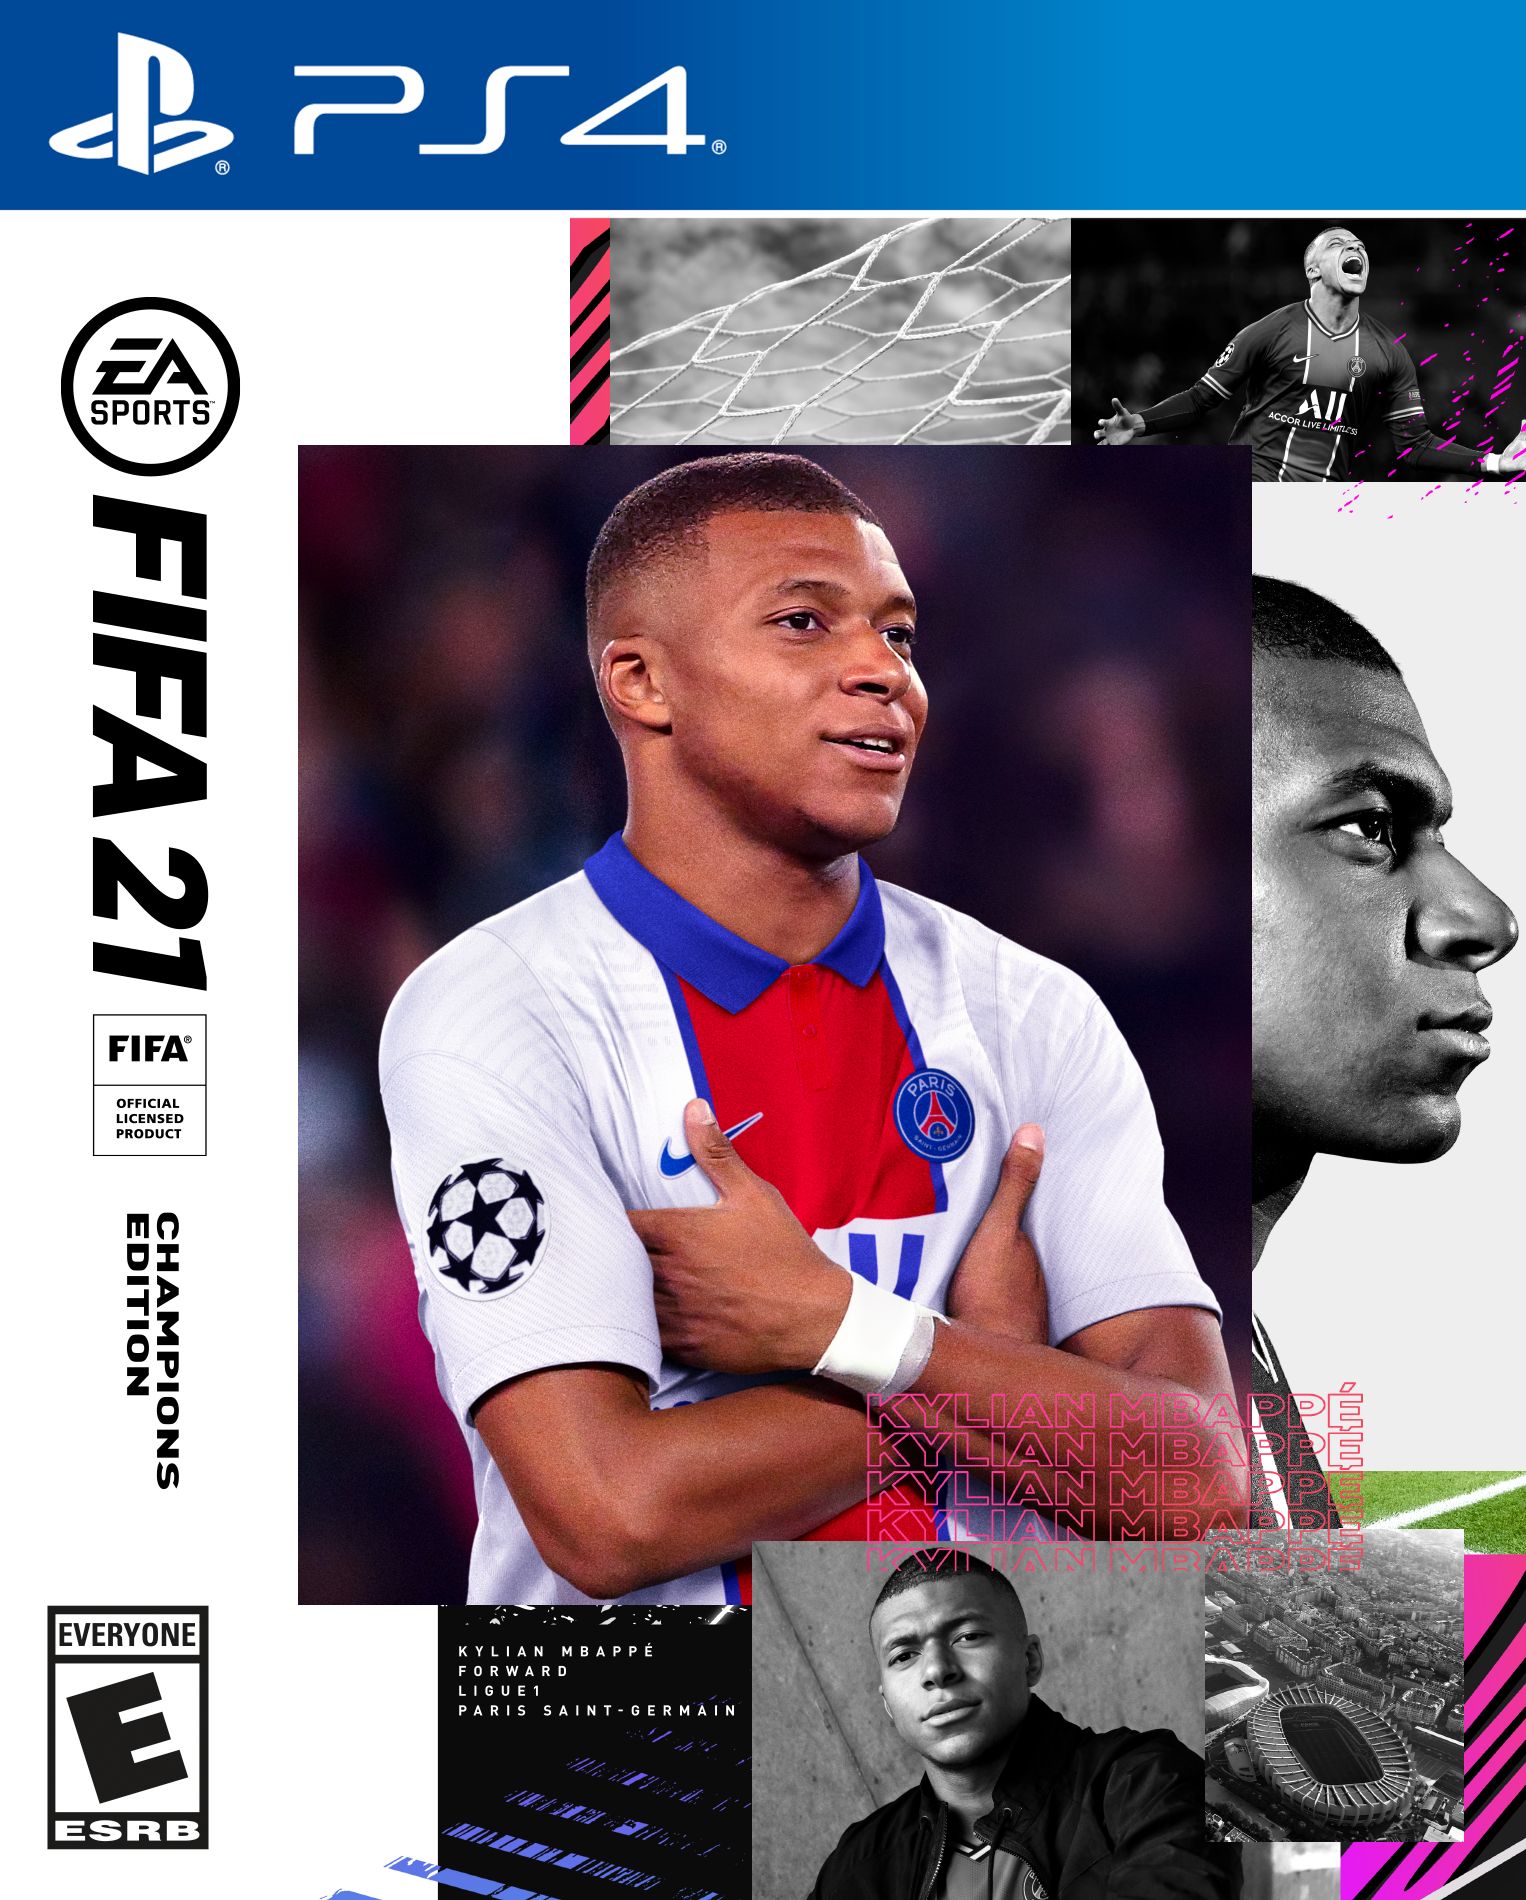 Обложка FIFA 21 Champions Edition.
Источник: EA Sports